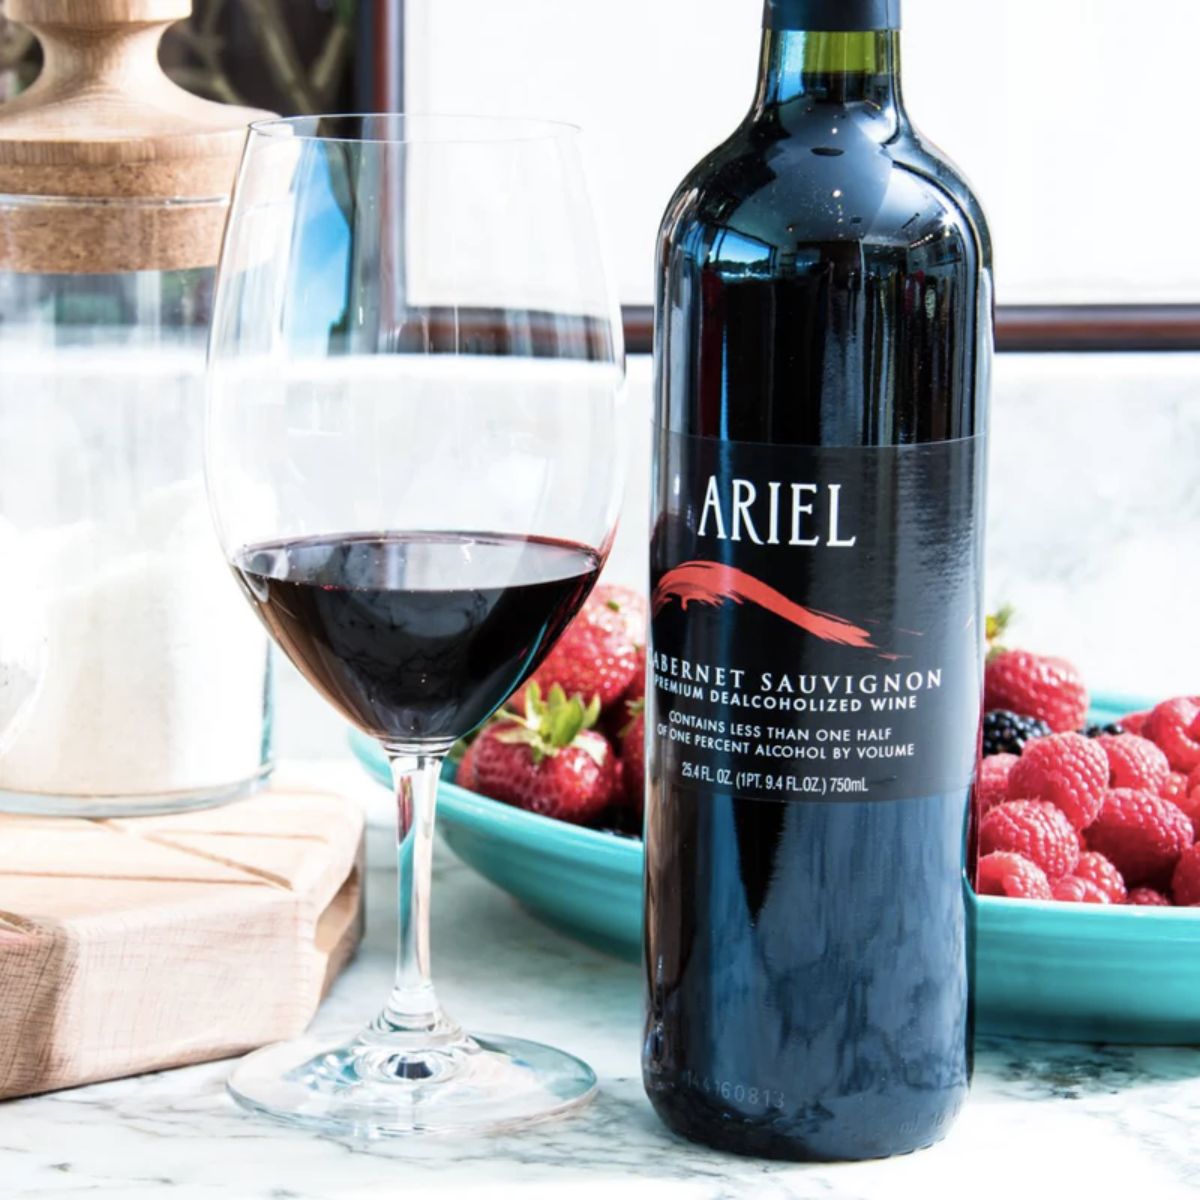 Ariel Cabernet Sauvignon - Non Alcoholic Red Wine